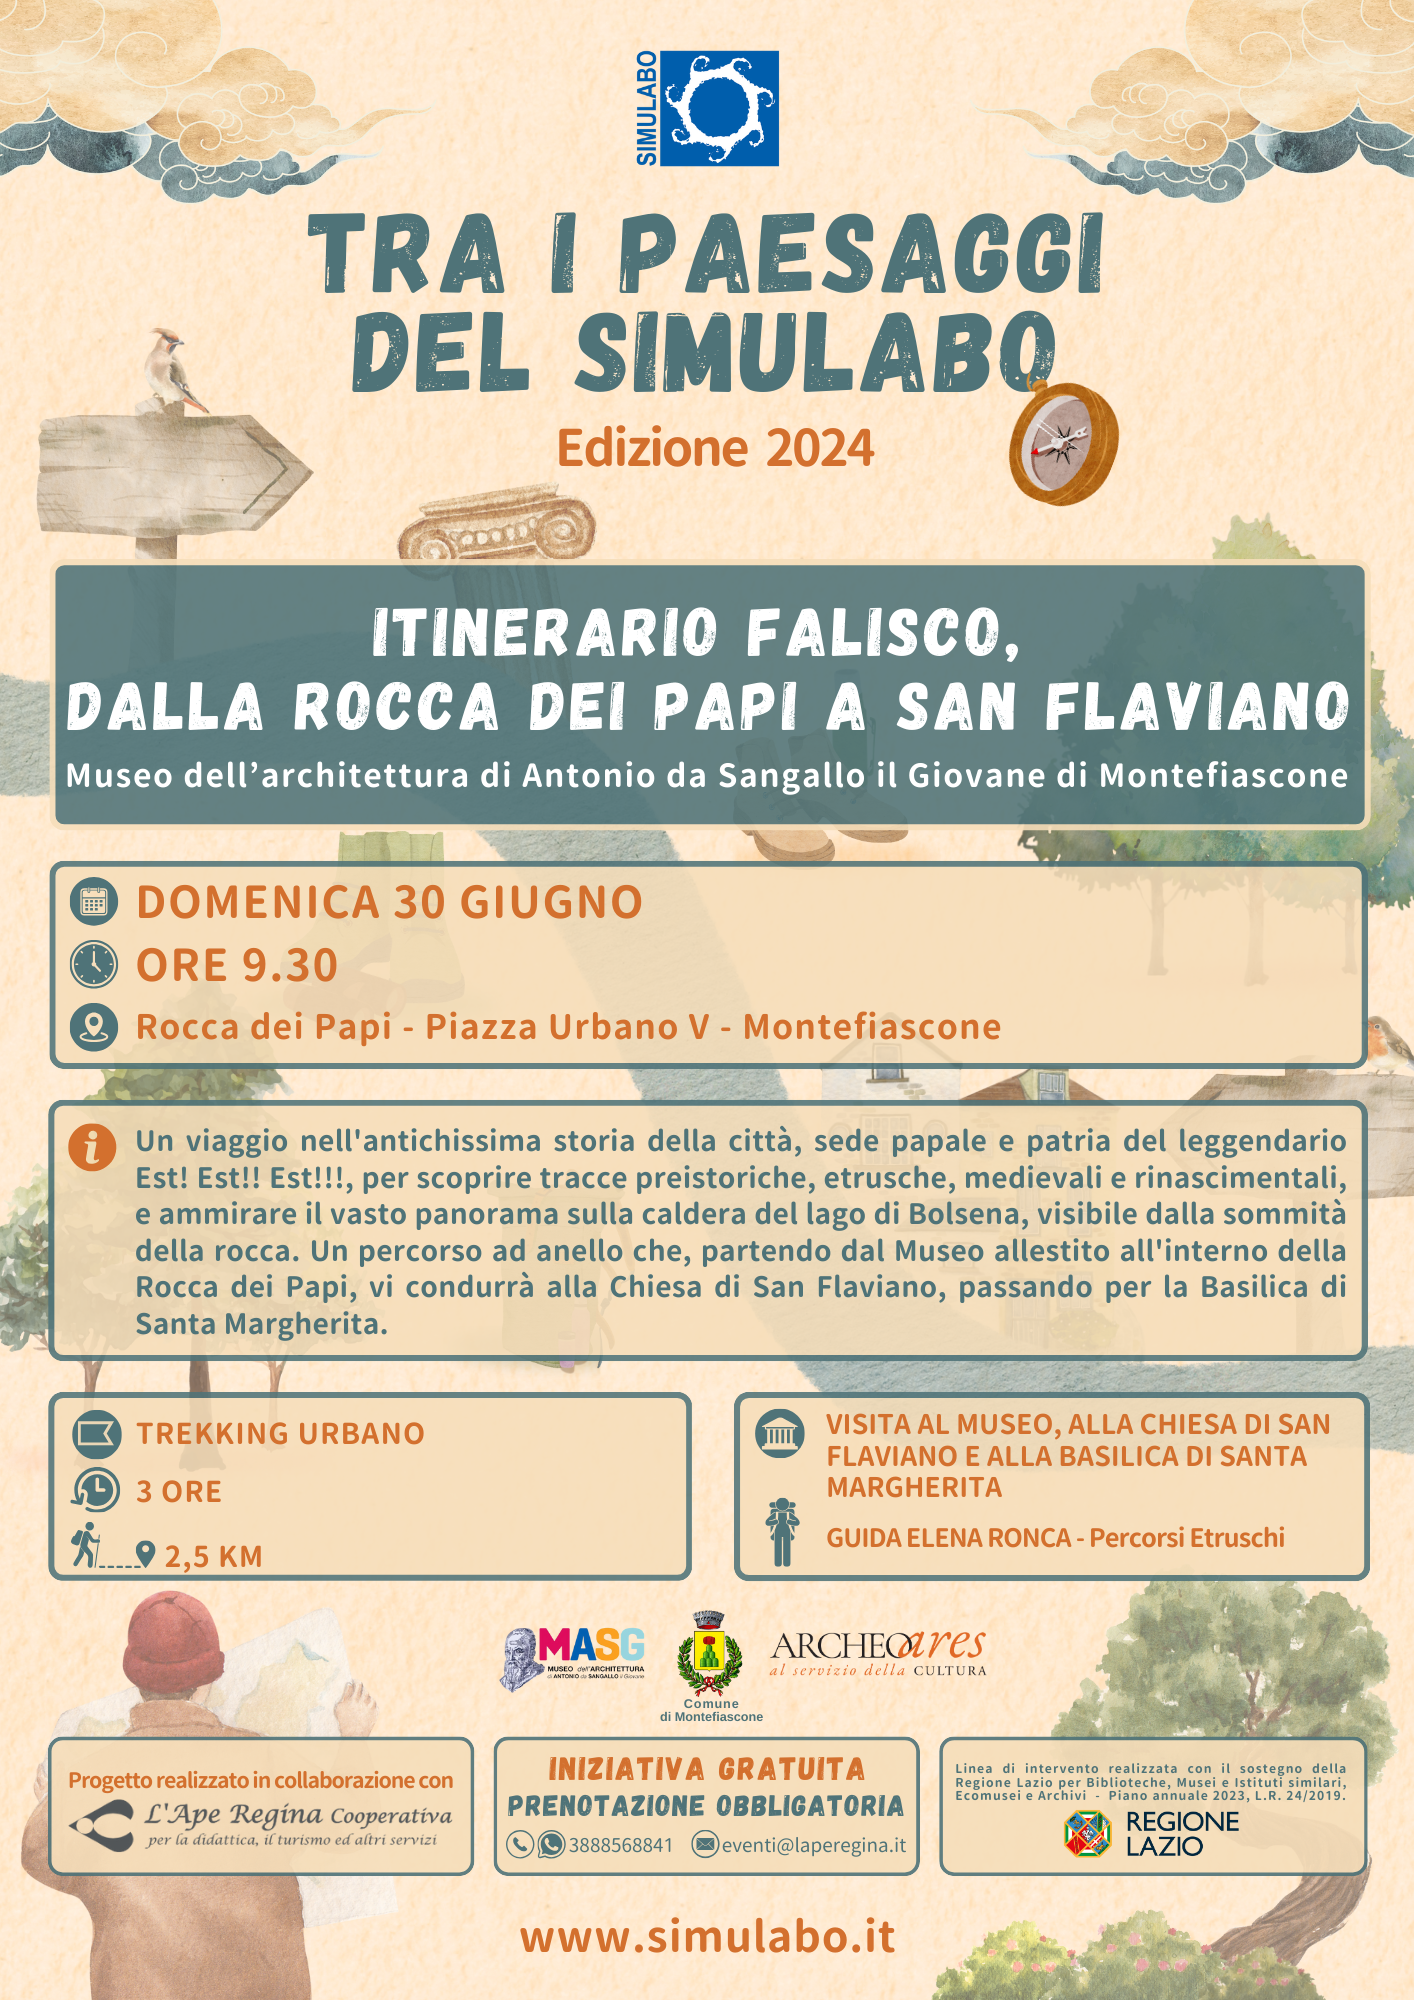 Itinerario falisco, dalla Rocca dei Papi a San Flaviano